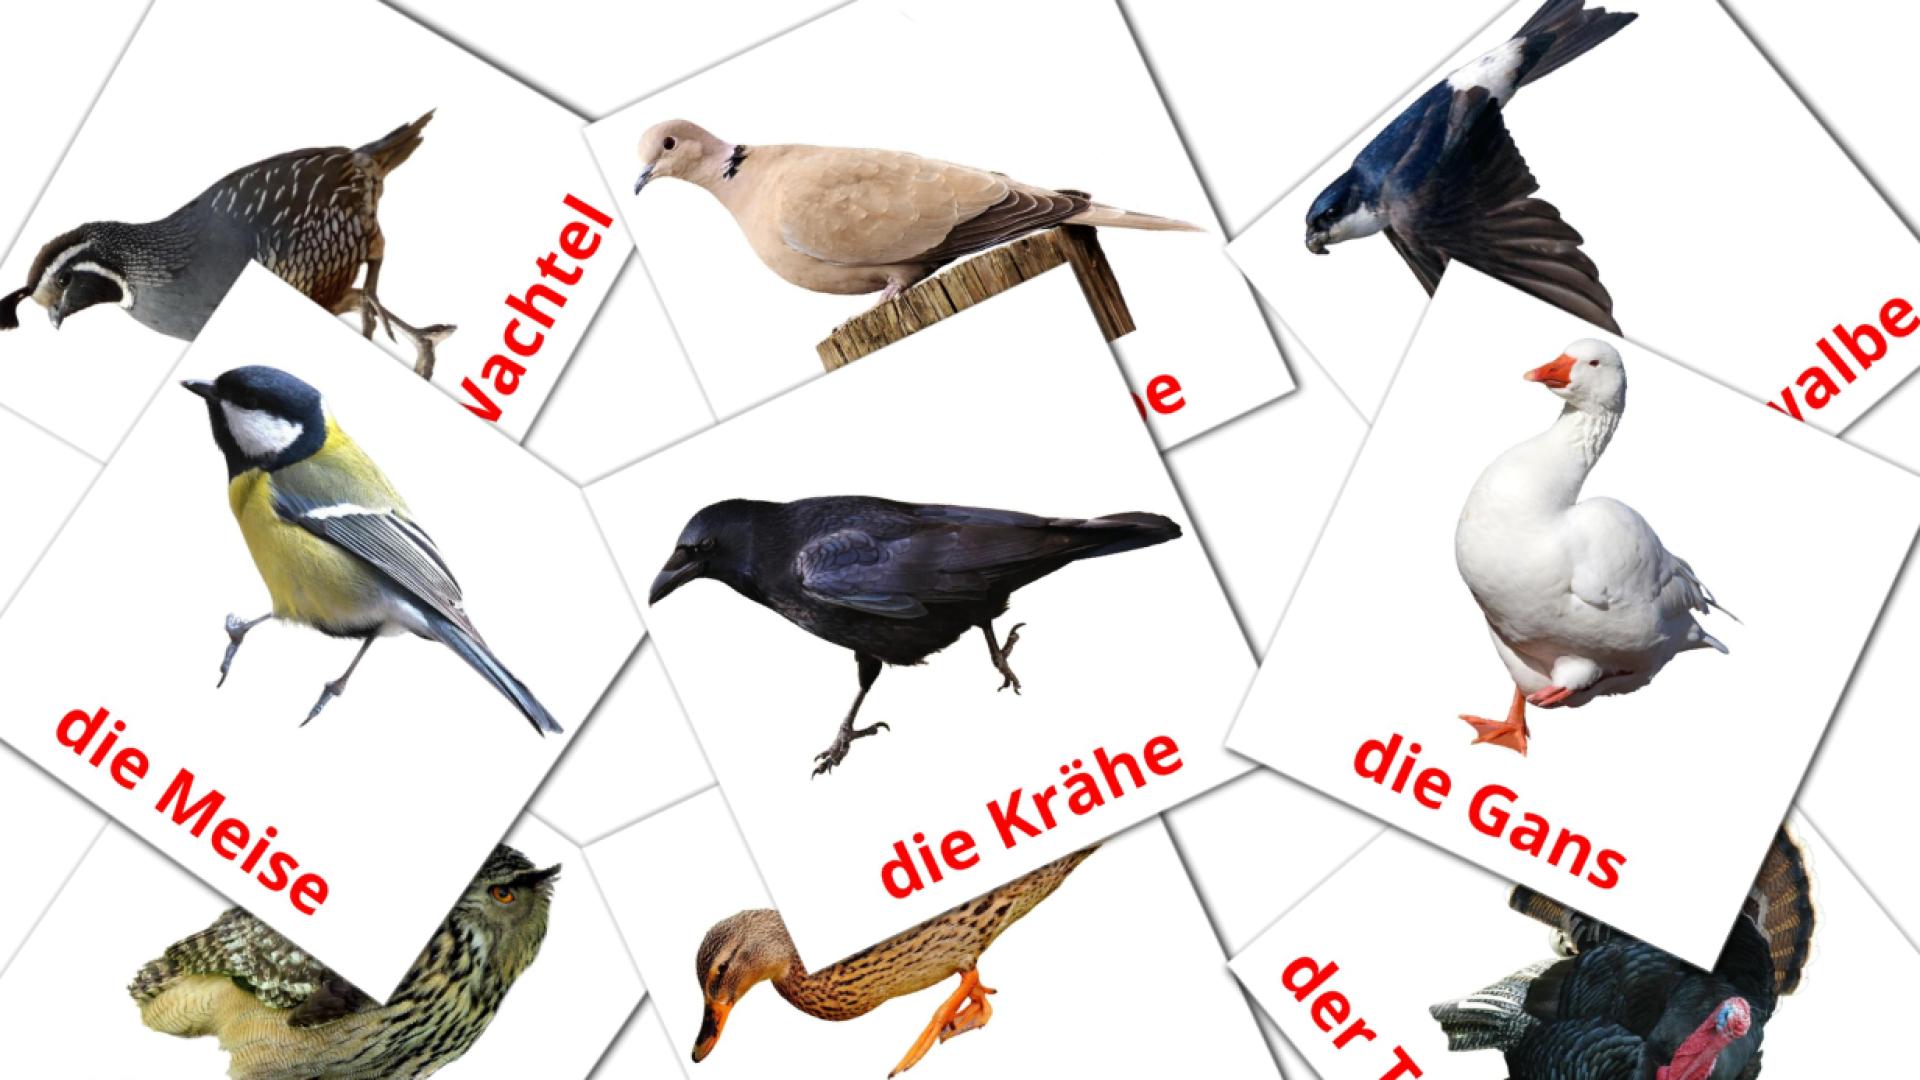 Fiches de vocabulaire allemandes sur Vögel